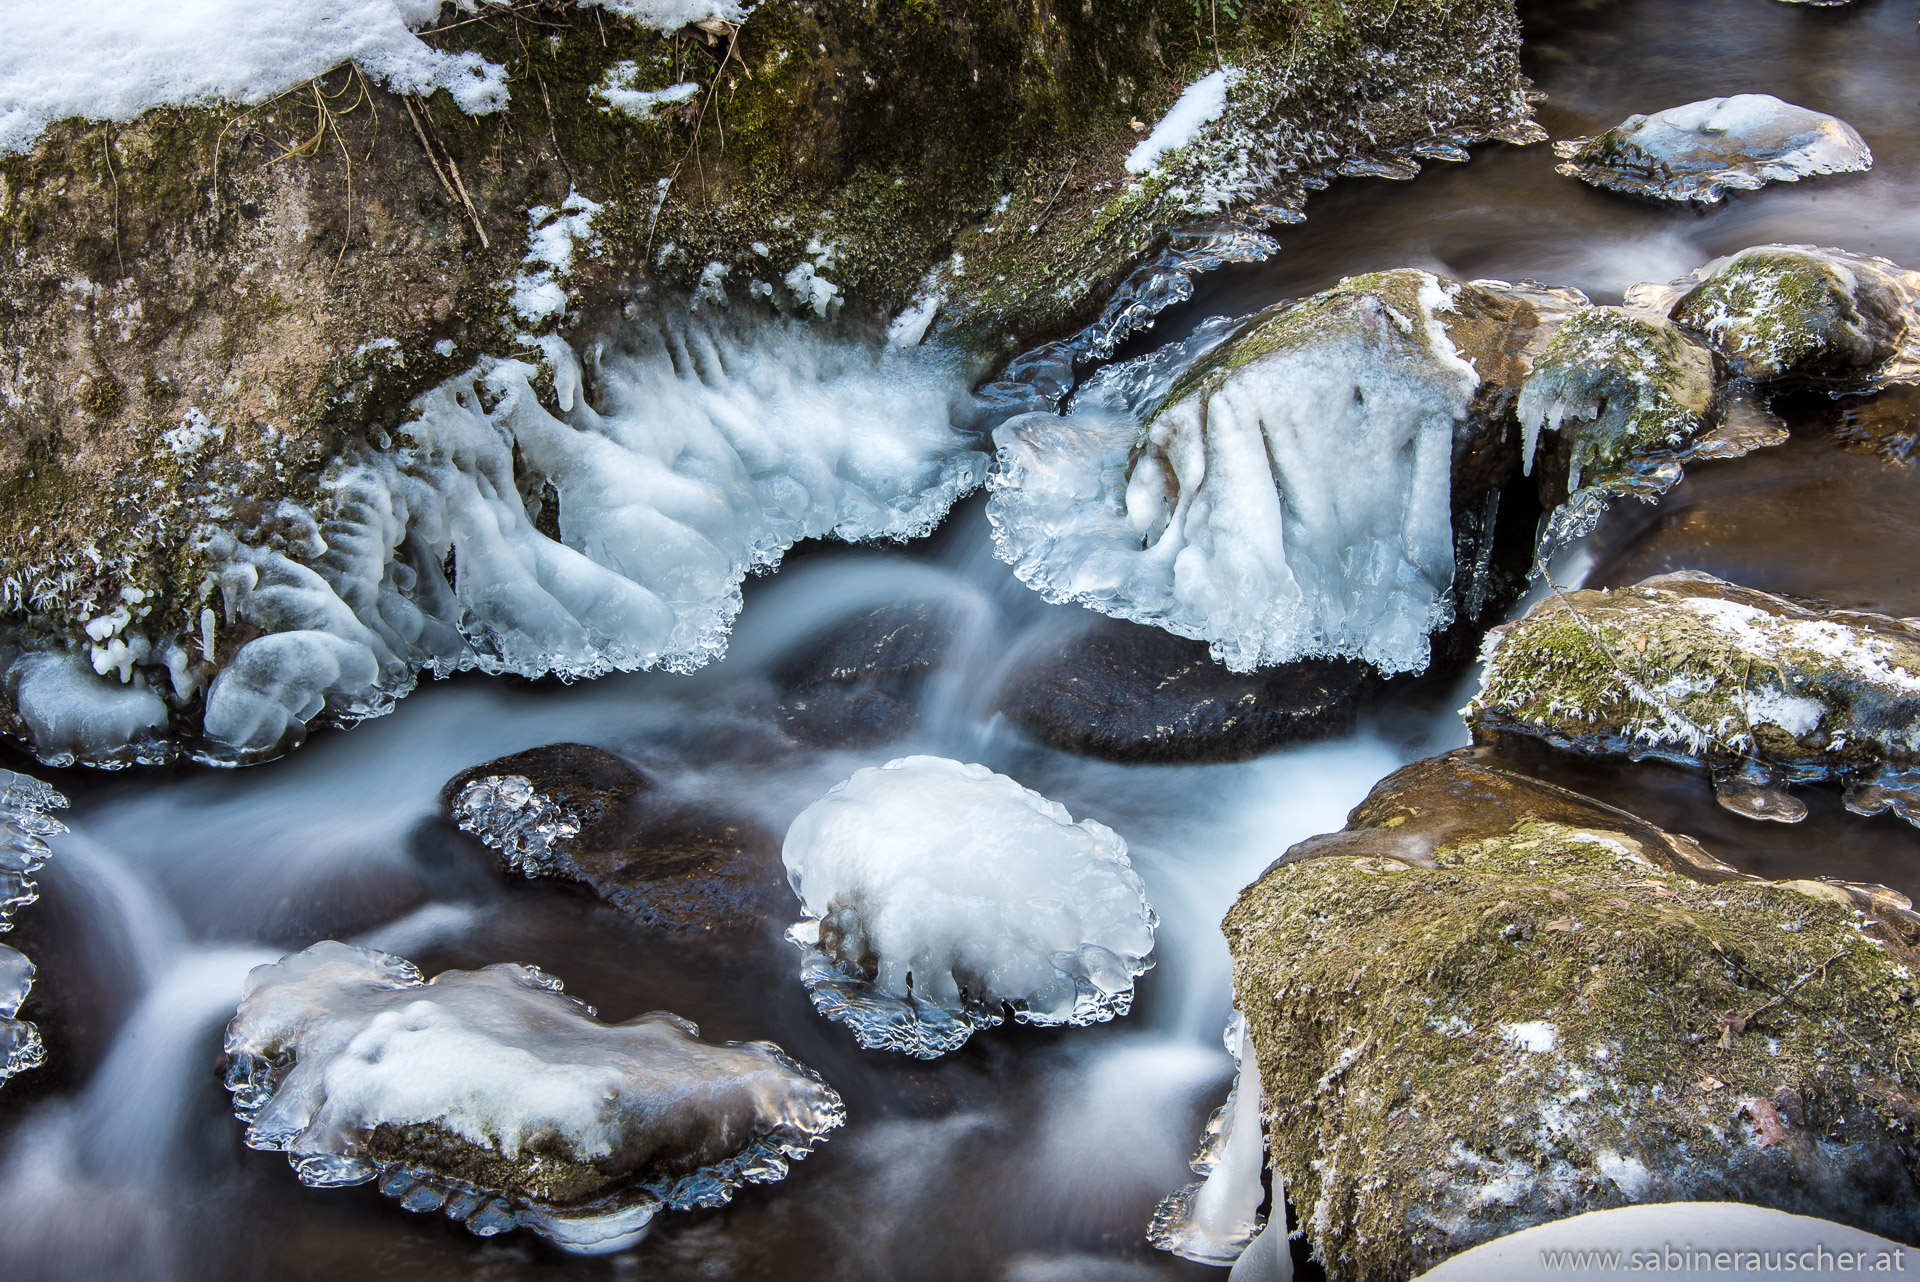 frozen parts in winter at Myra Waterfalls in Lower Austria | Winter bei den Myrafällen in Niederösterreich